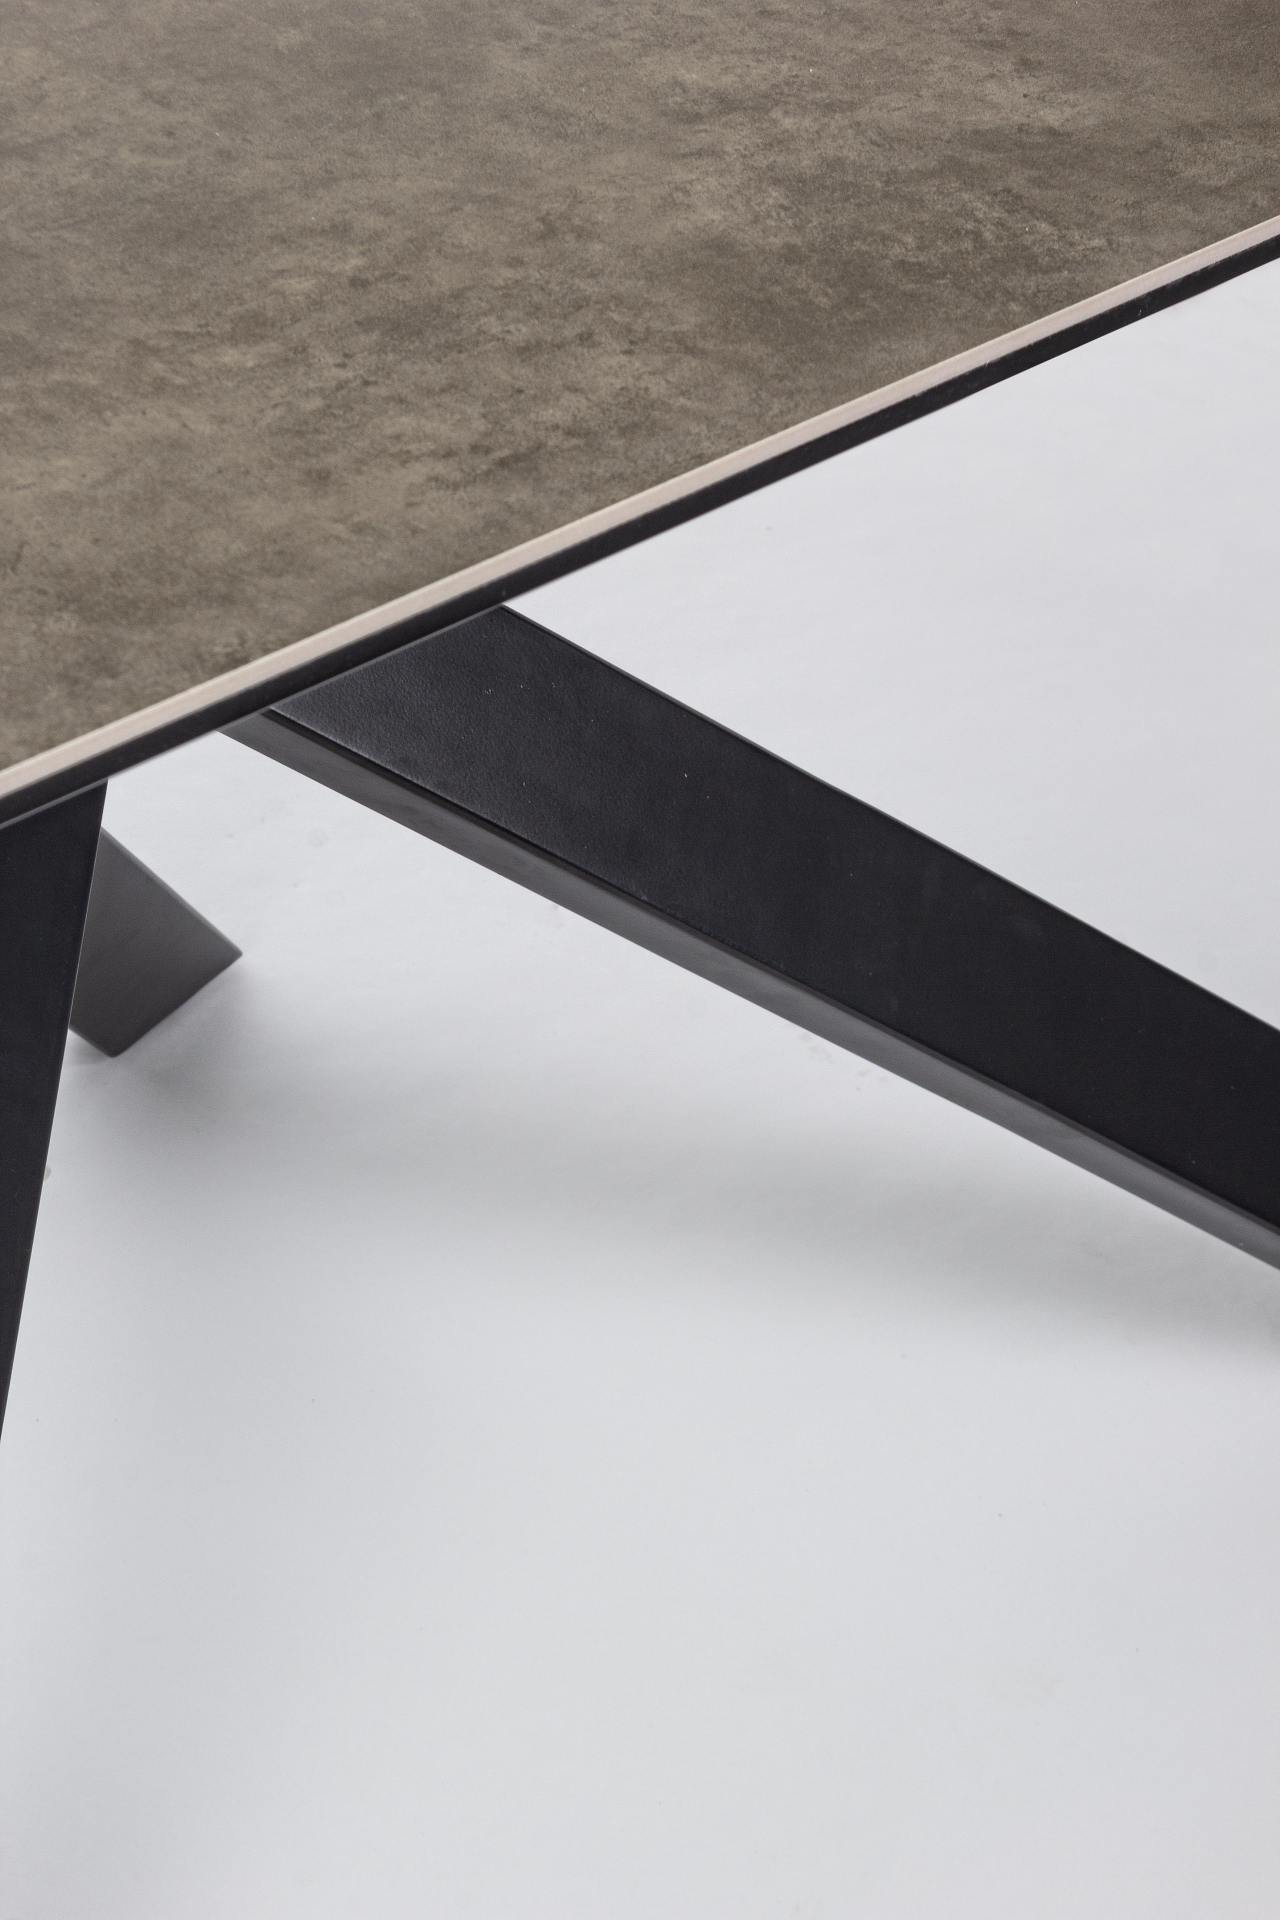 Der Esstisch Messier überzeugt mit seinem moderndem Design. Gefertigt wurde er aus Keramik, welches einen braunen Farbton besitzt. Das Gestell des Tisches ist aus Metall und ist in eine schwarze Farbe. Der Tisch besitzt eine Breite von 180 cm.